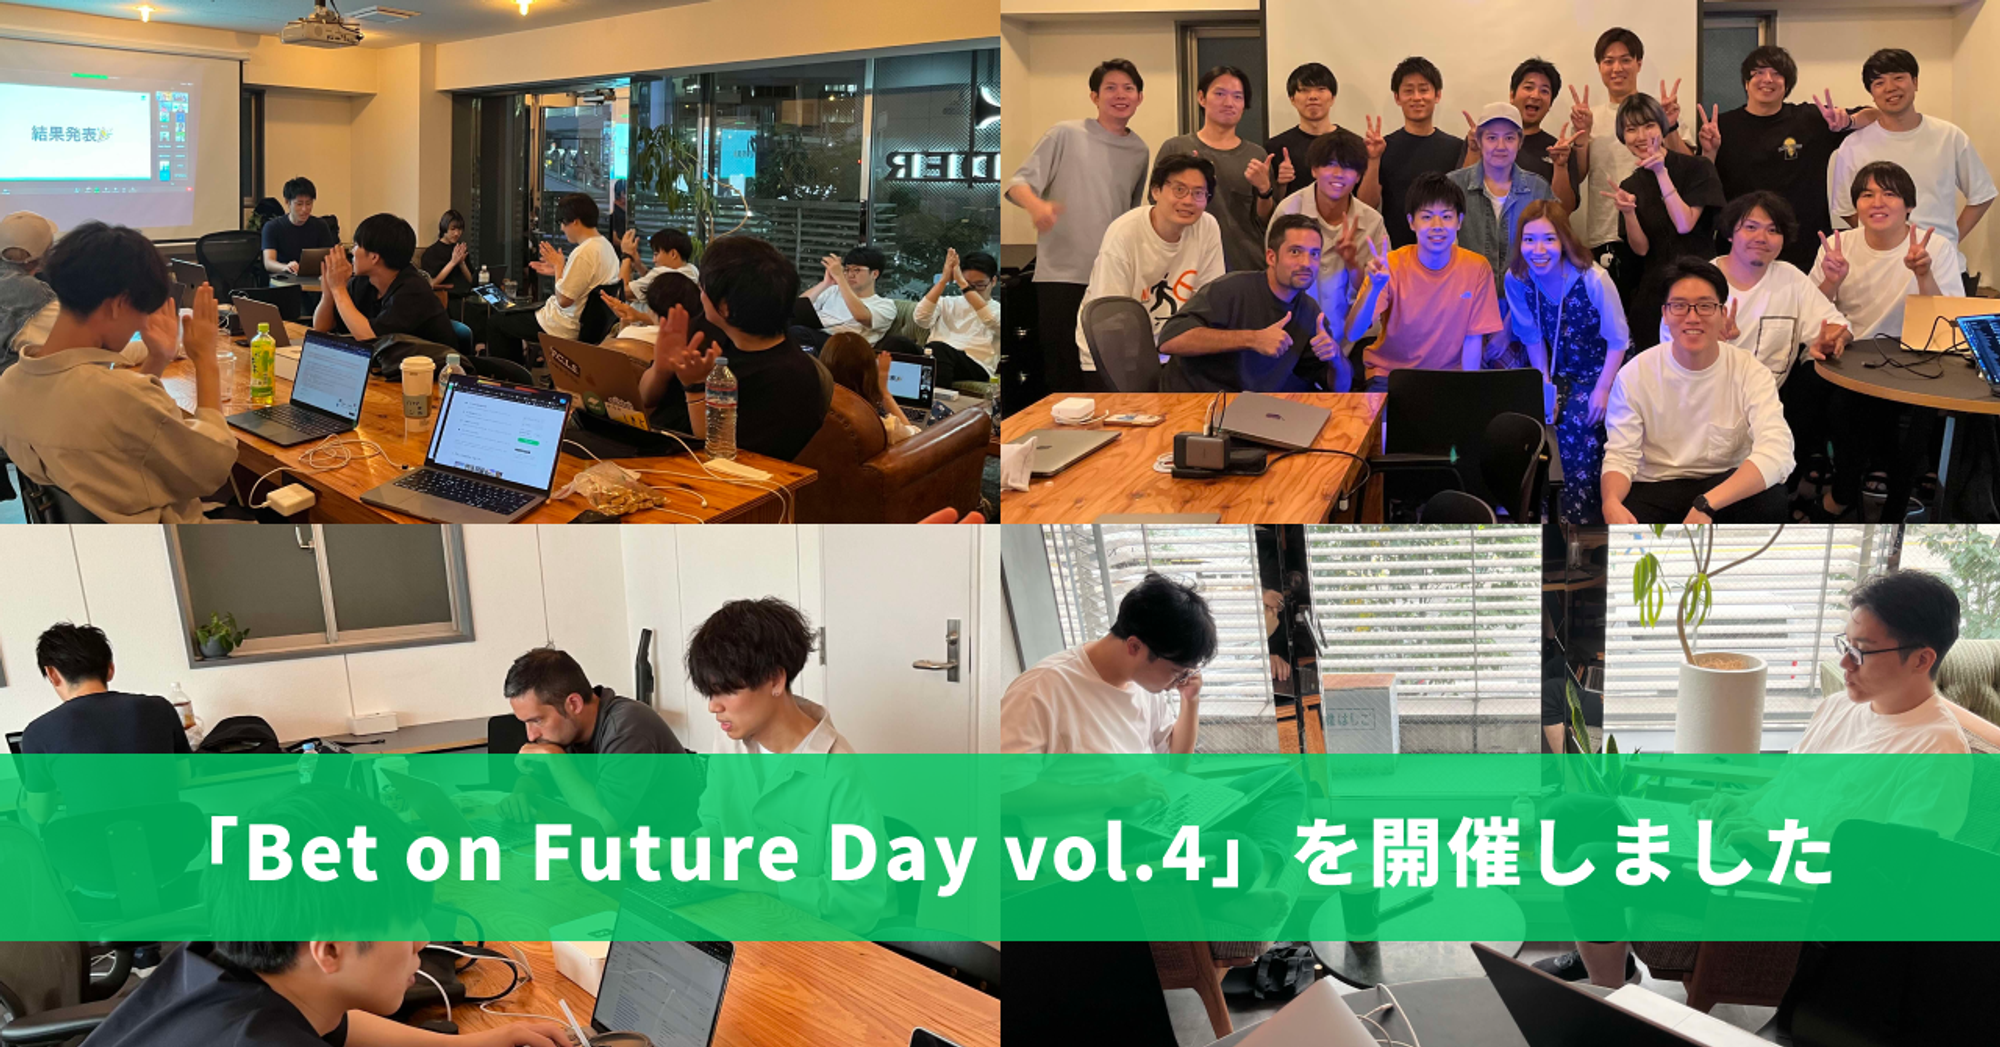 【イベントレポート】Bet on Future Day vol.4